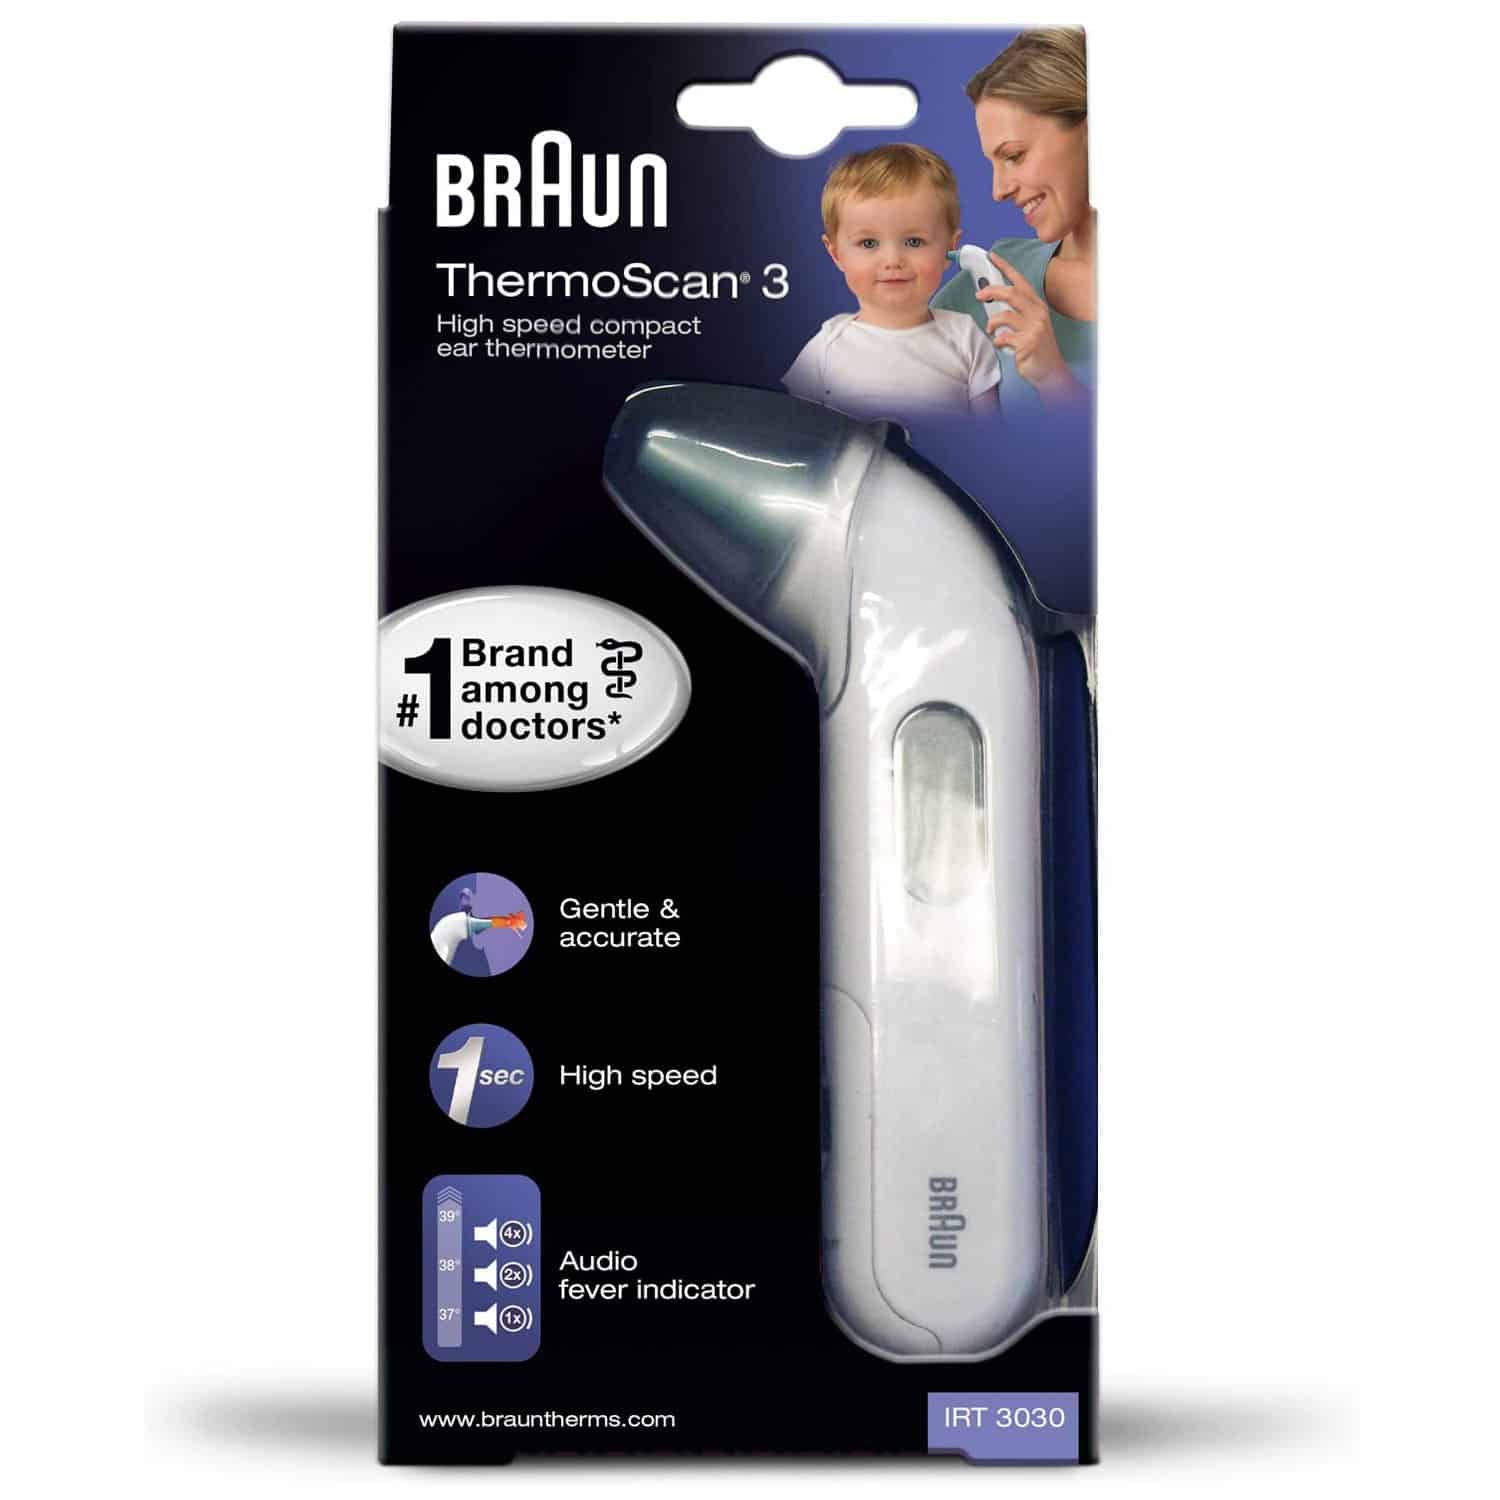 BRAUN - ThermoScan 3